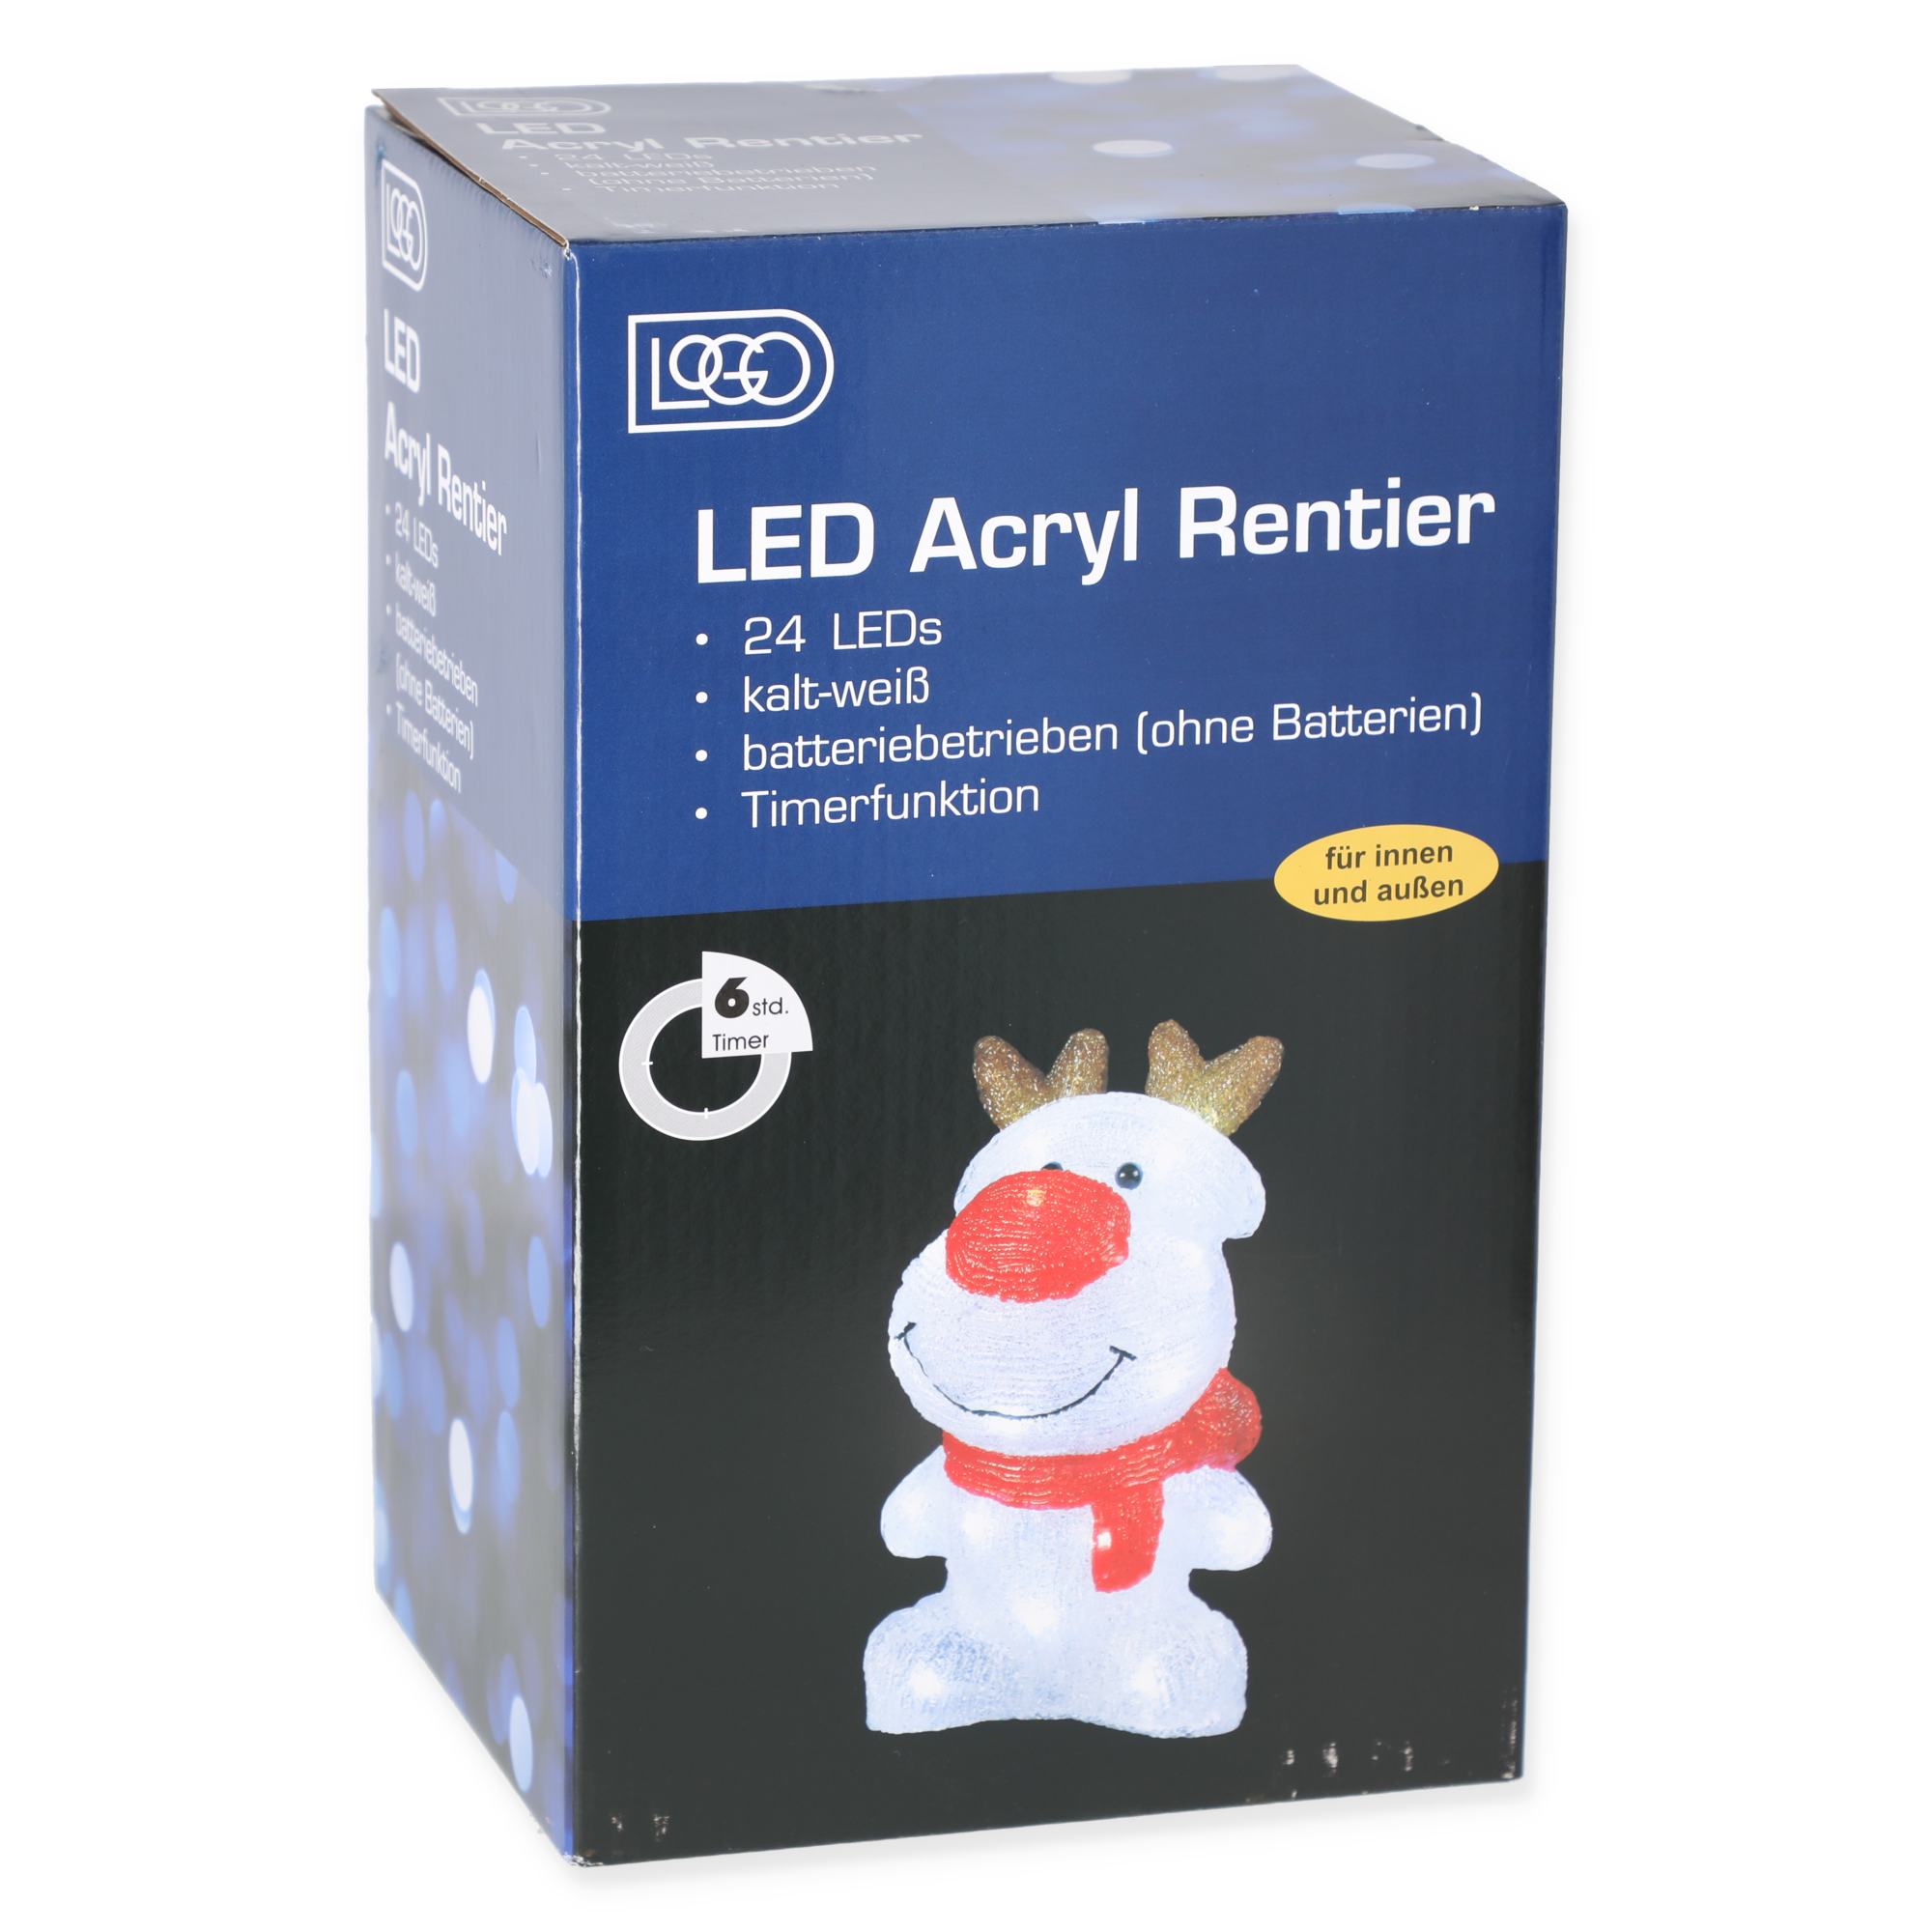 LED-Dekofigur Rentier 24 LEDs warmweiß 28 cm + product picture